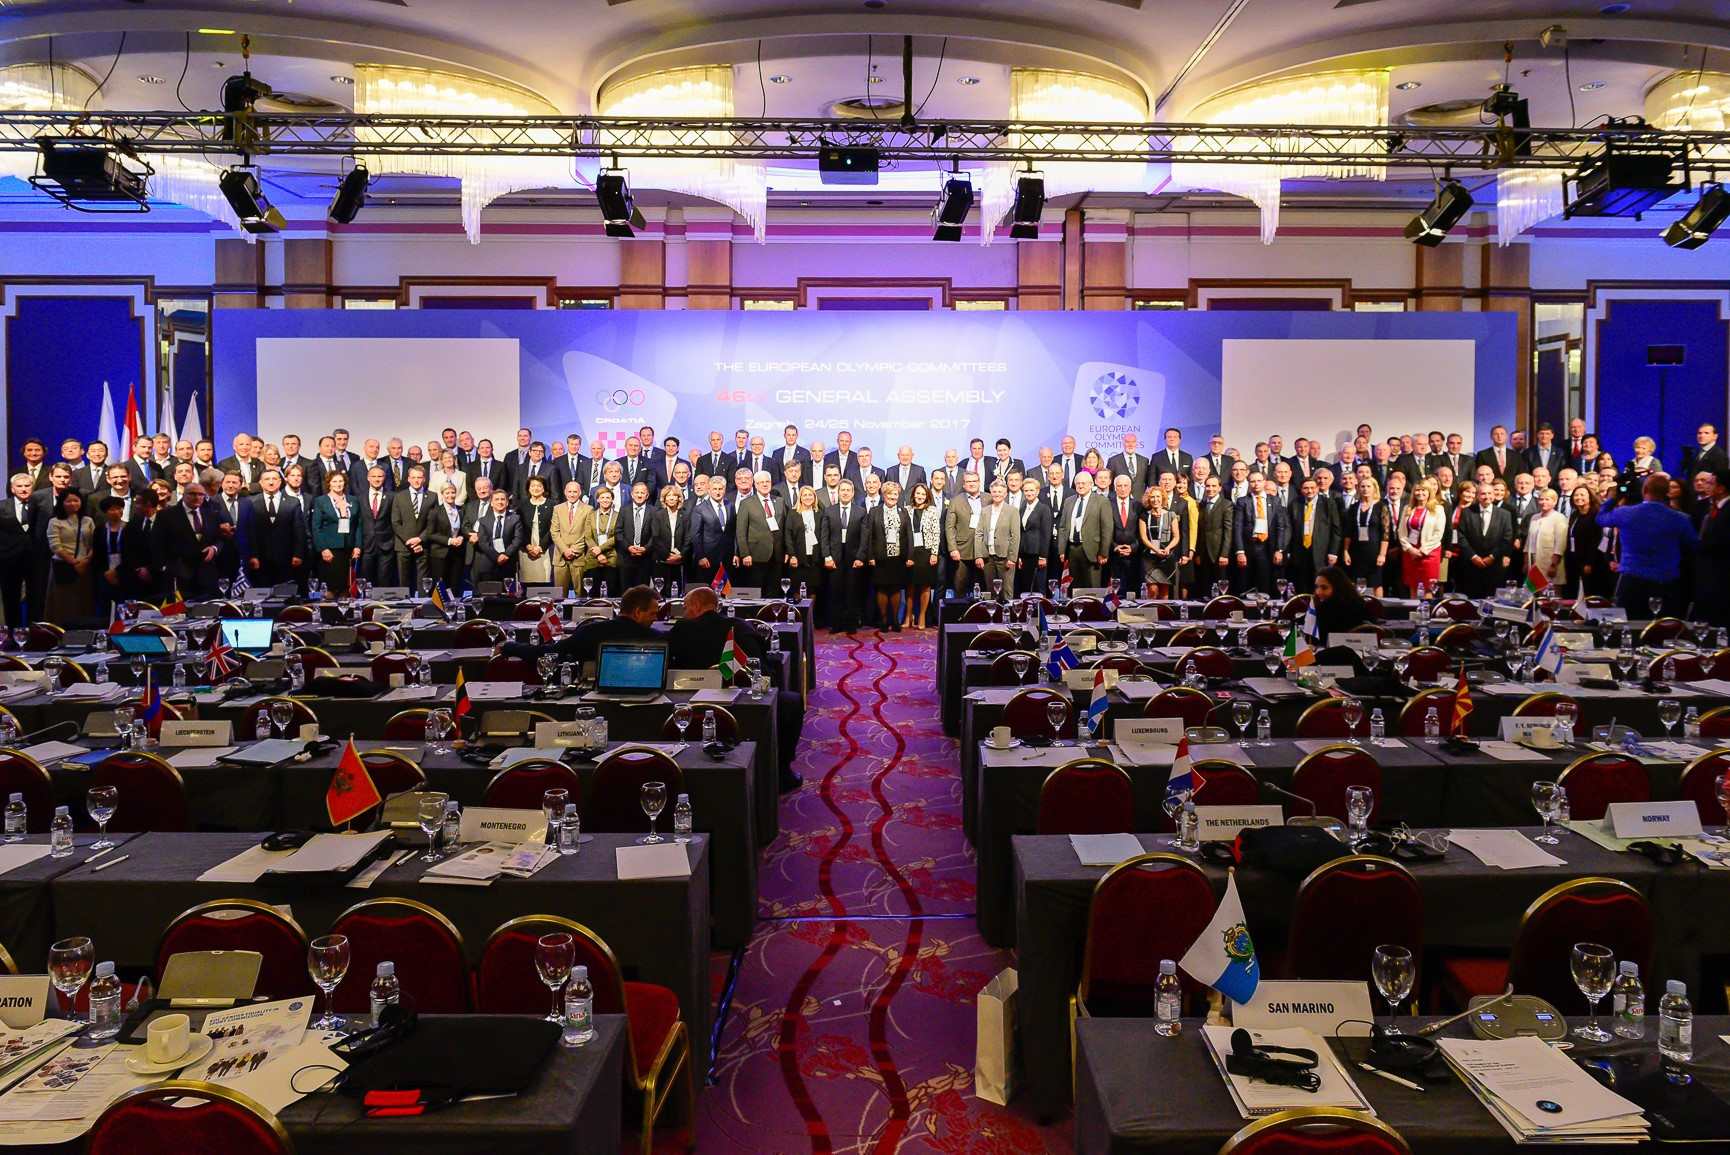 Delegates pose together during the EOC General Assembly ©EOC